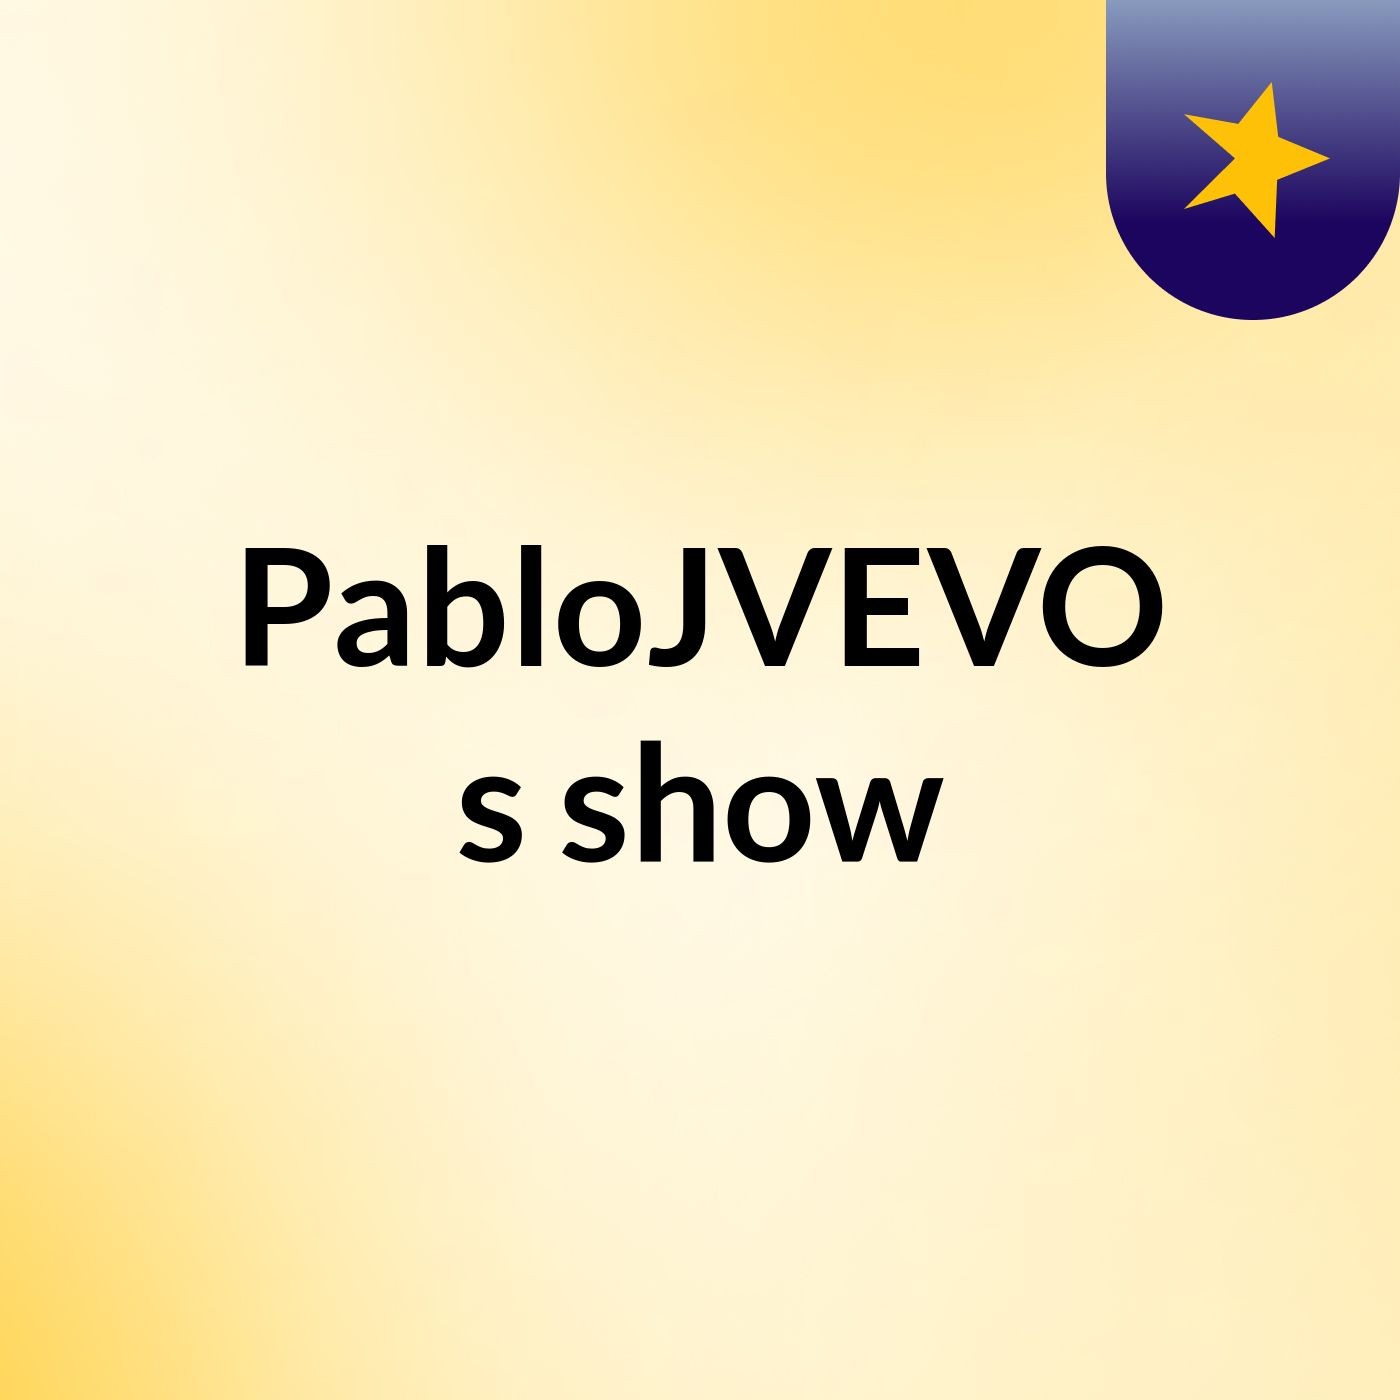 PabloJVEVO's show